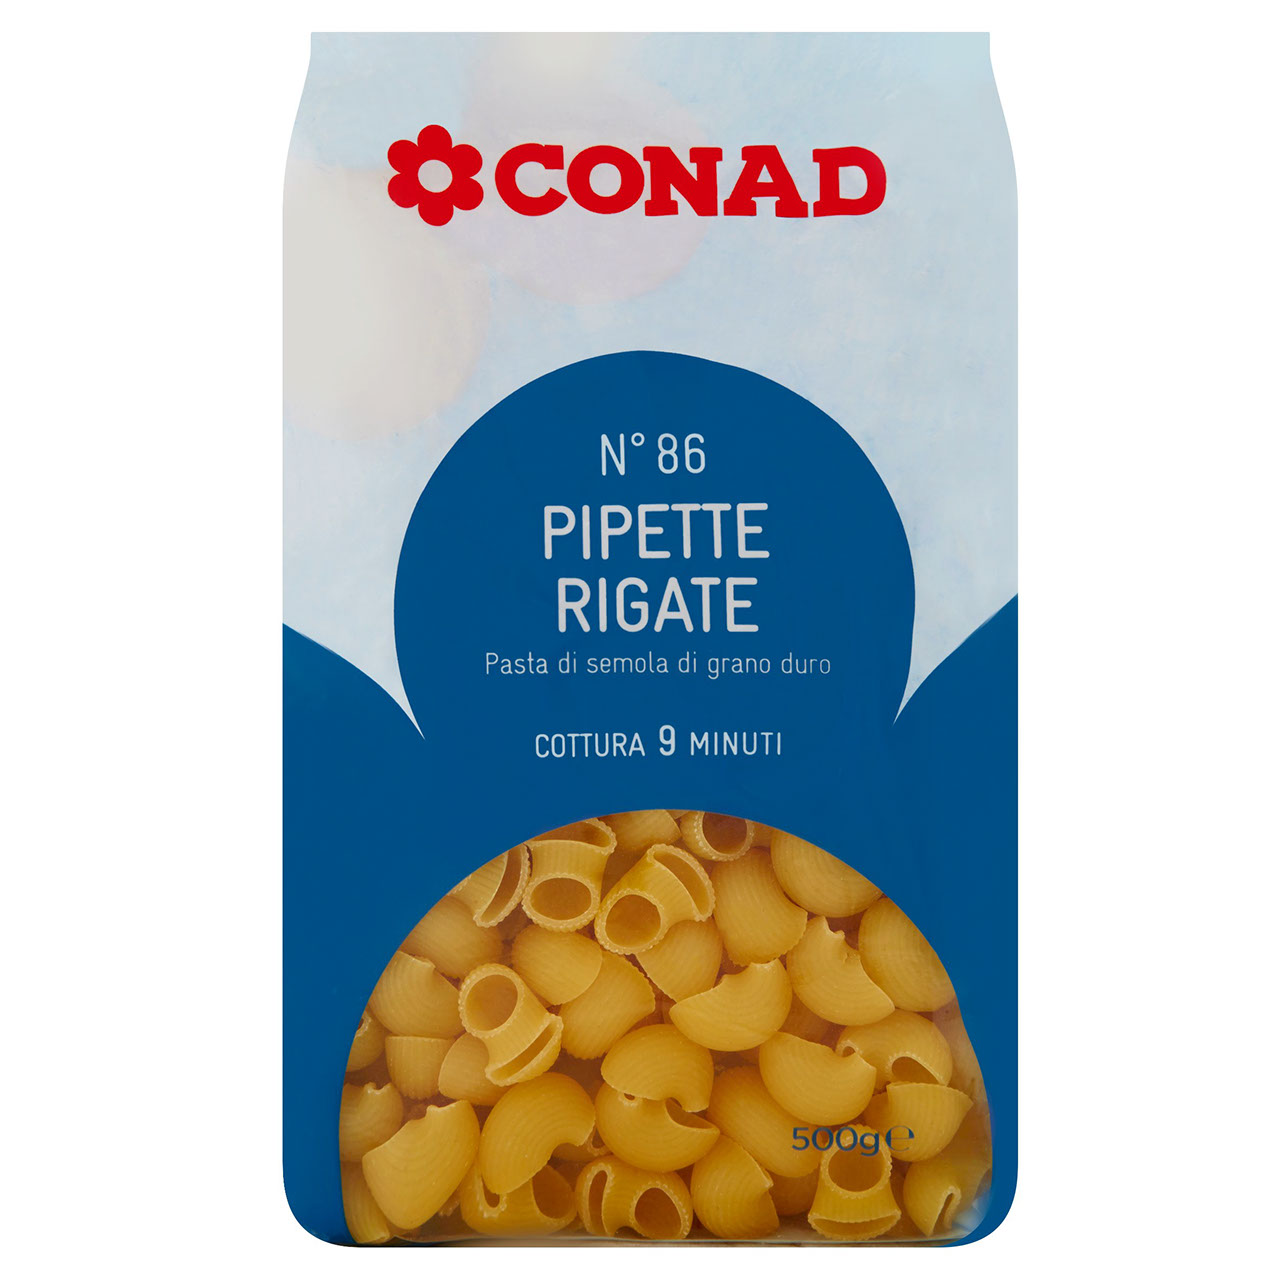 Pipette Rigate 500 g Conad in vendita online